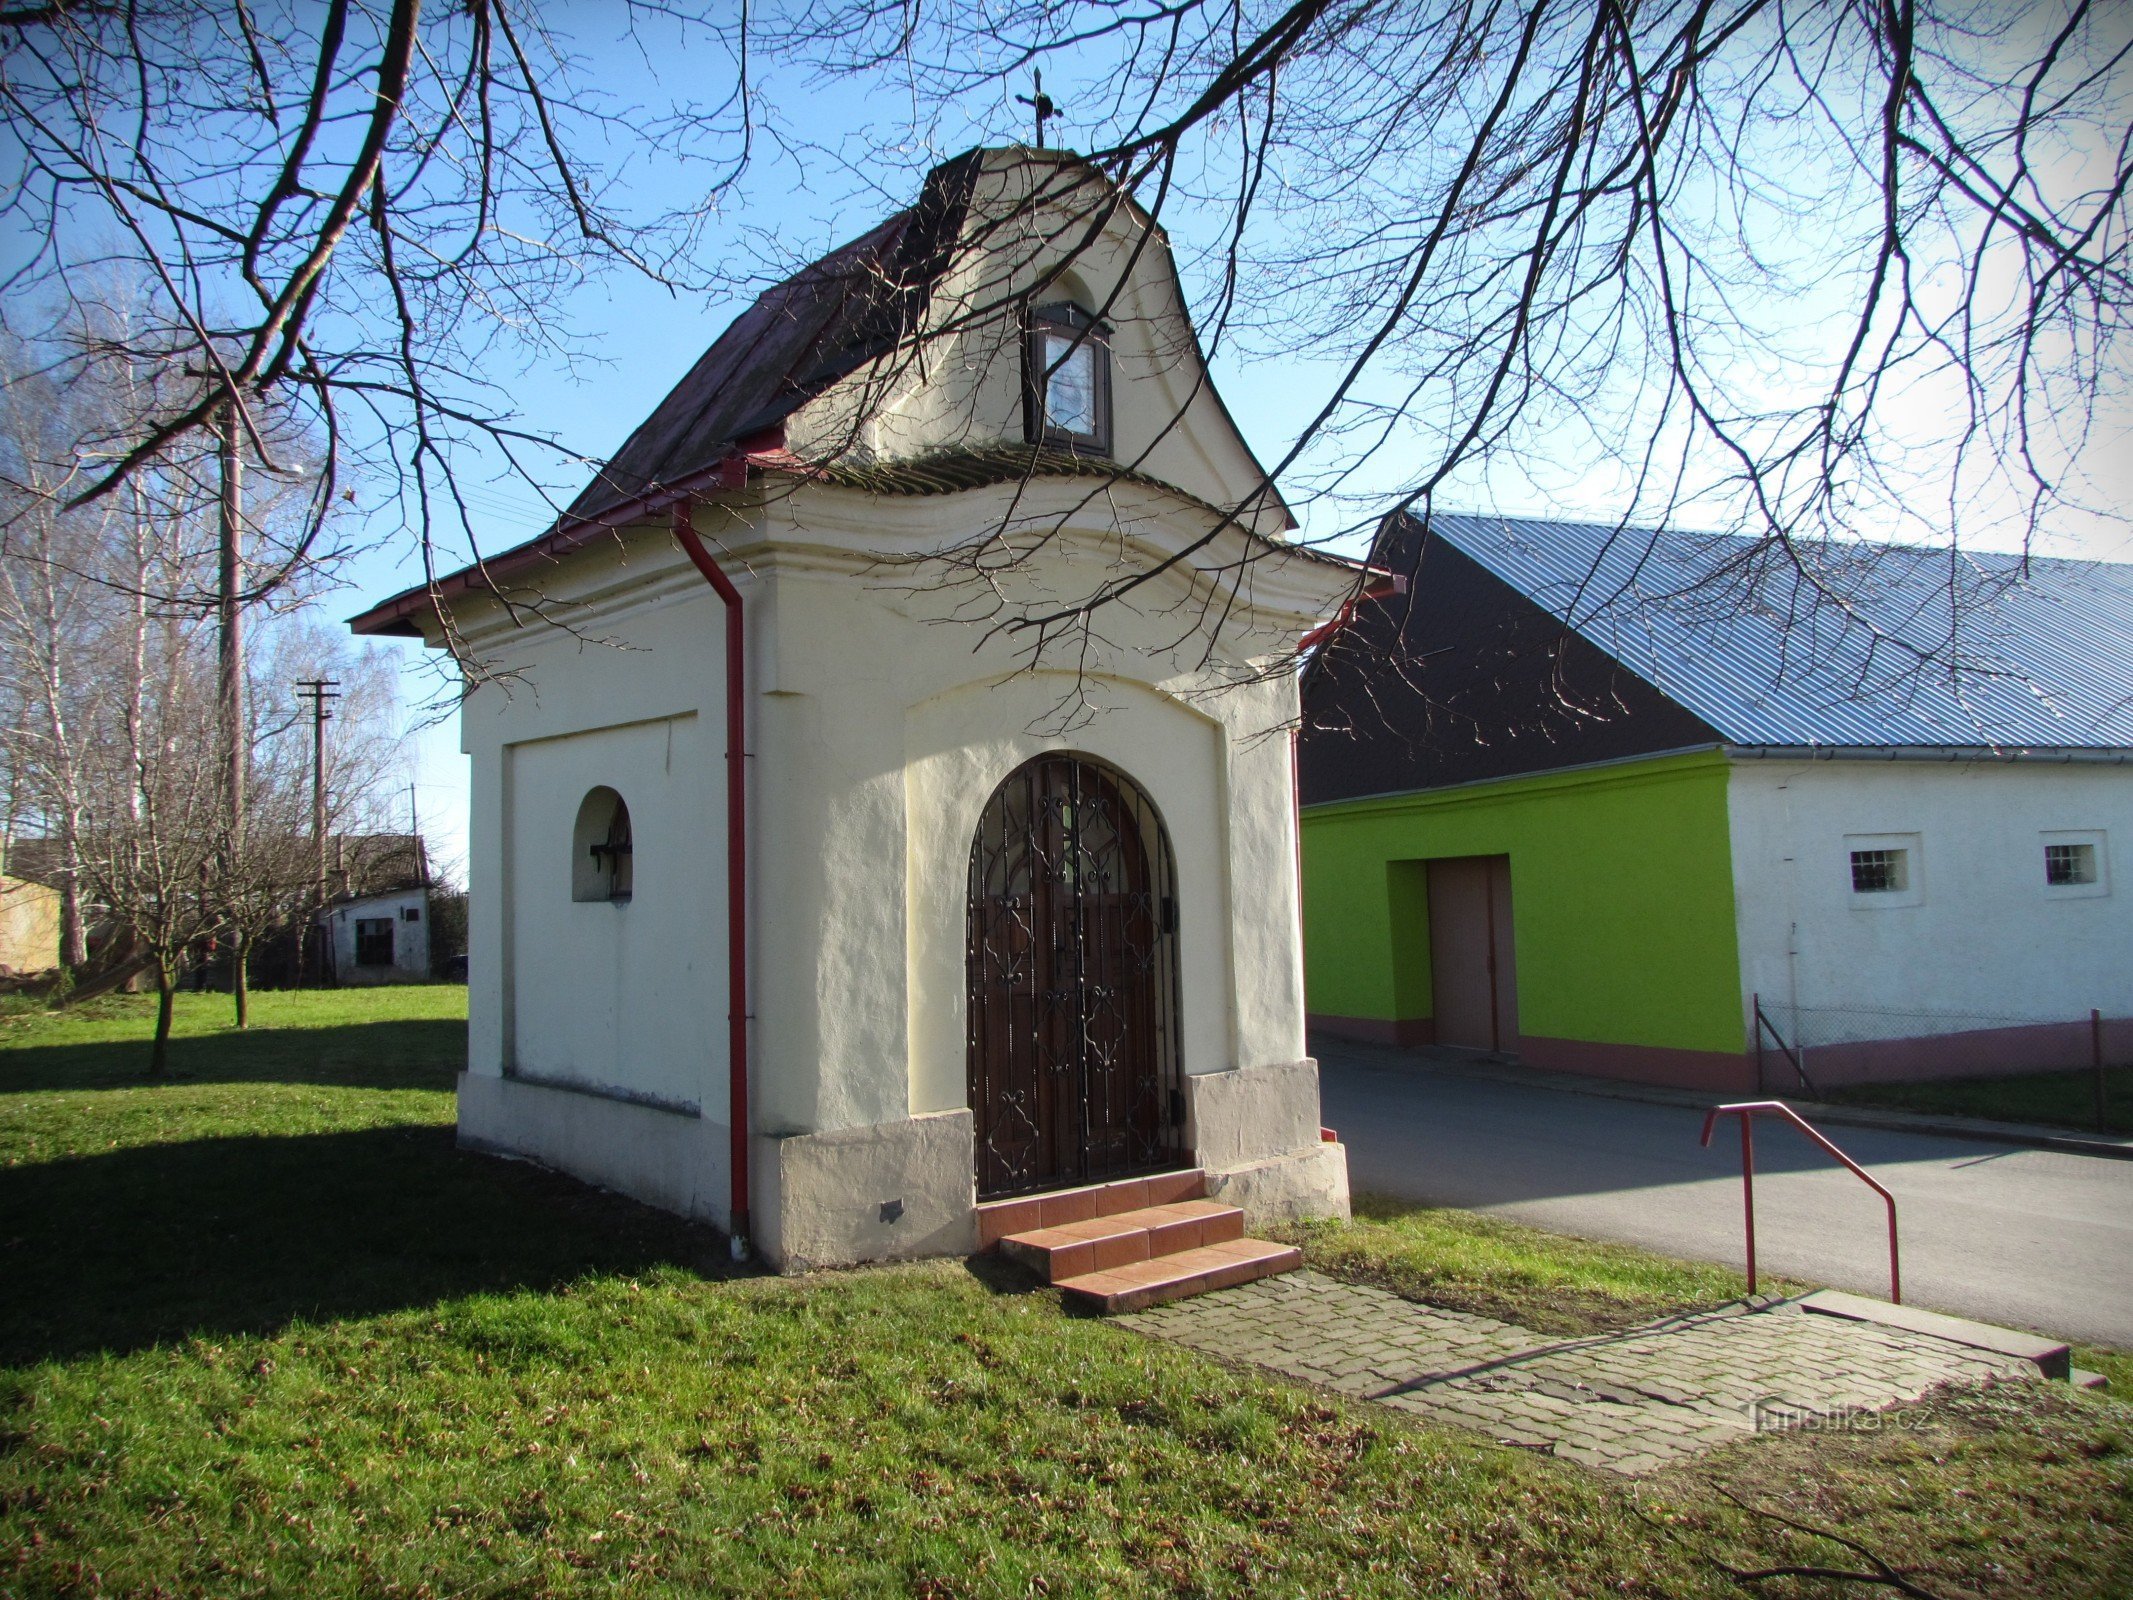 Žeranovice - Nepomucki Szent János kápolna